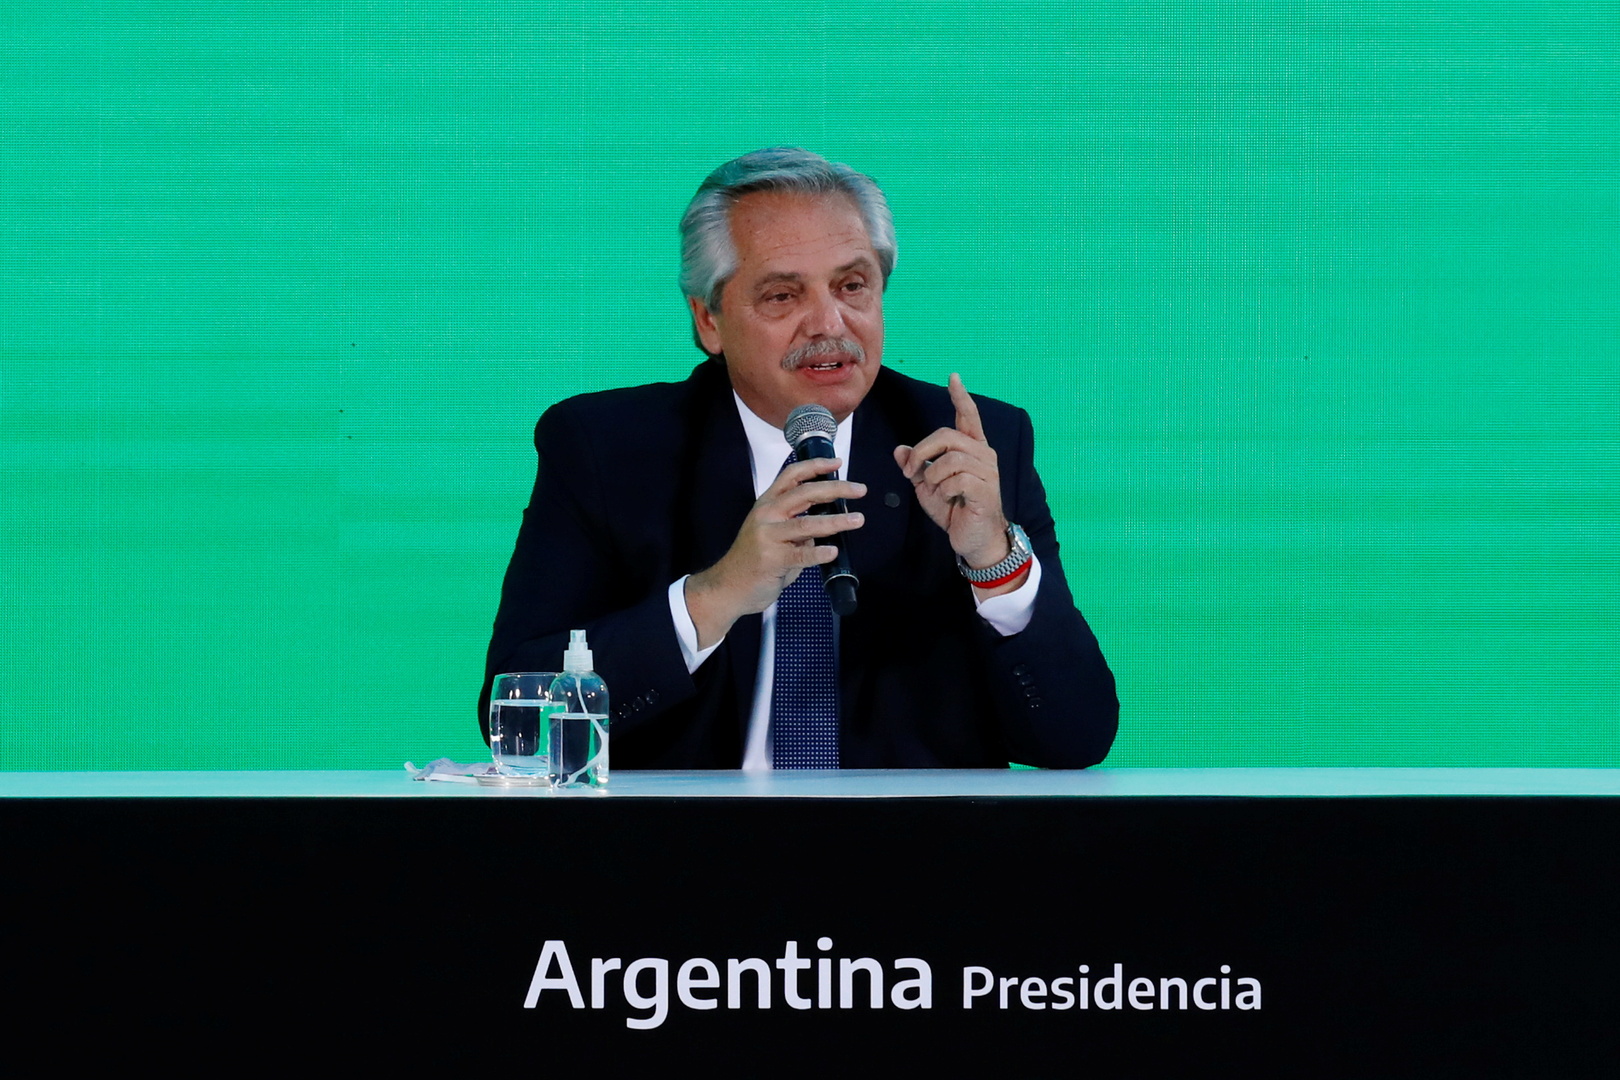 الرئيس الأرجنتيني يعلن احتمال إصابته بفيروس كورونا